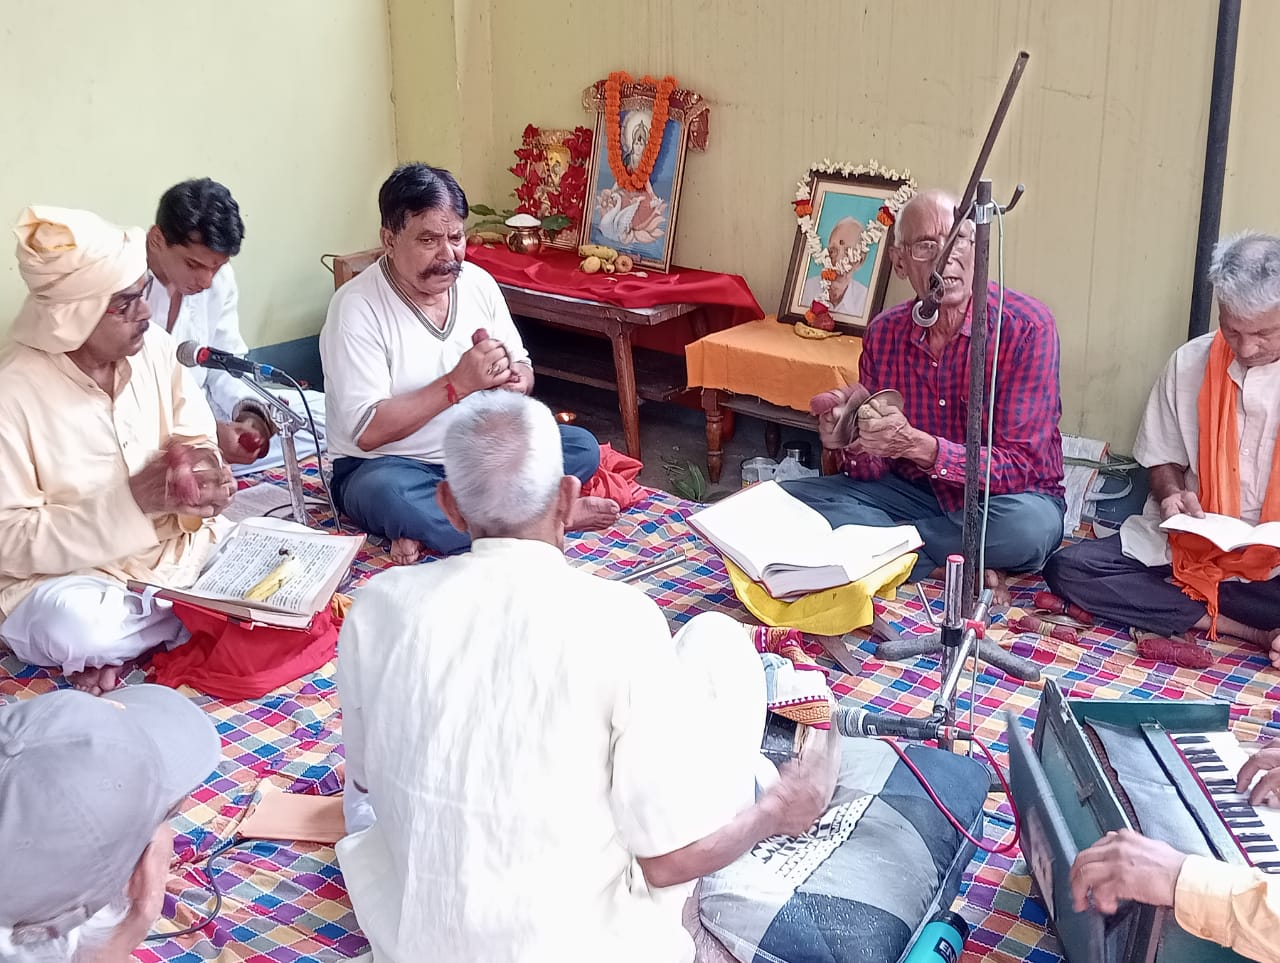 पांचवीं पुण्यतिथि पर याद किए गए धर्म के वाहक बैजू कुंवर, जमशेदपुर के आवास पर सुंदरकांड पाठ का आयोजन